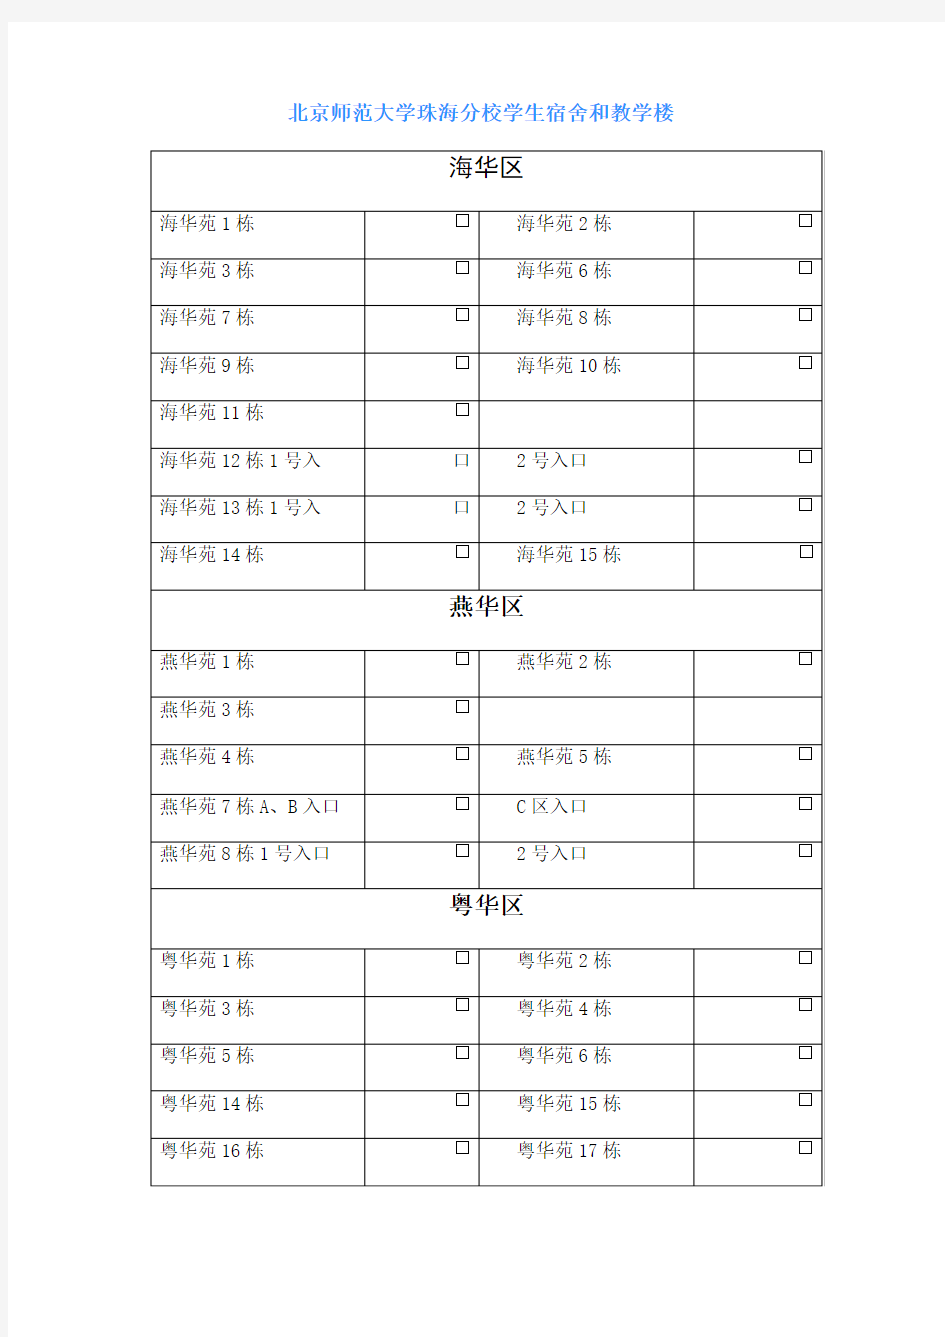 北京师范大学珠海分校宿舍教学楼一览表